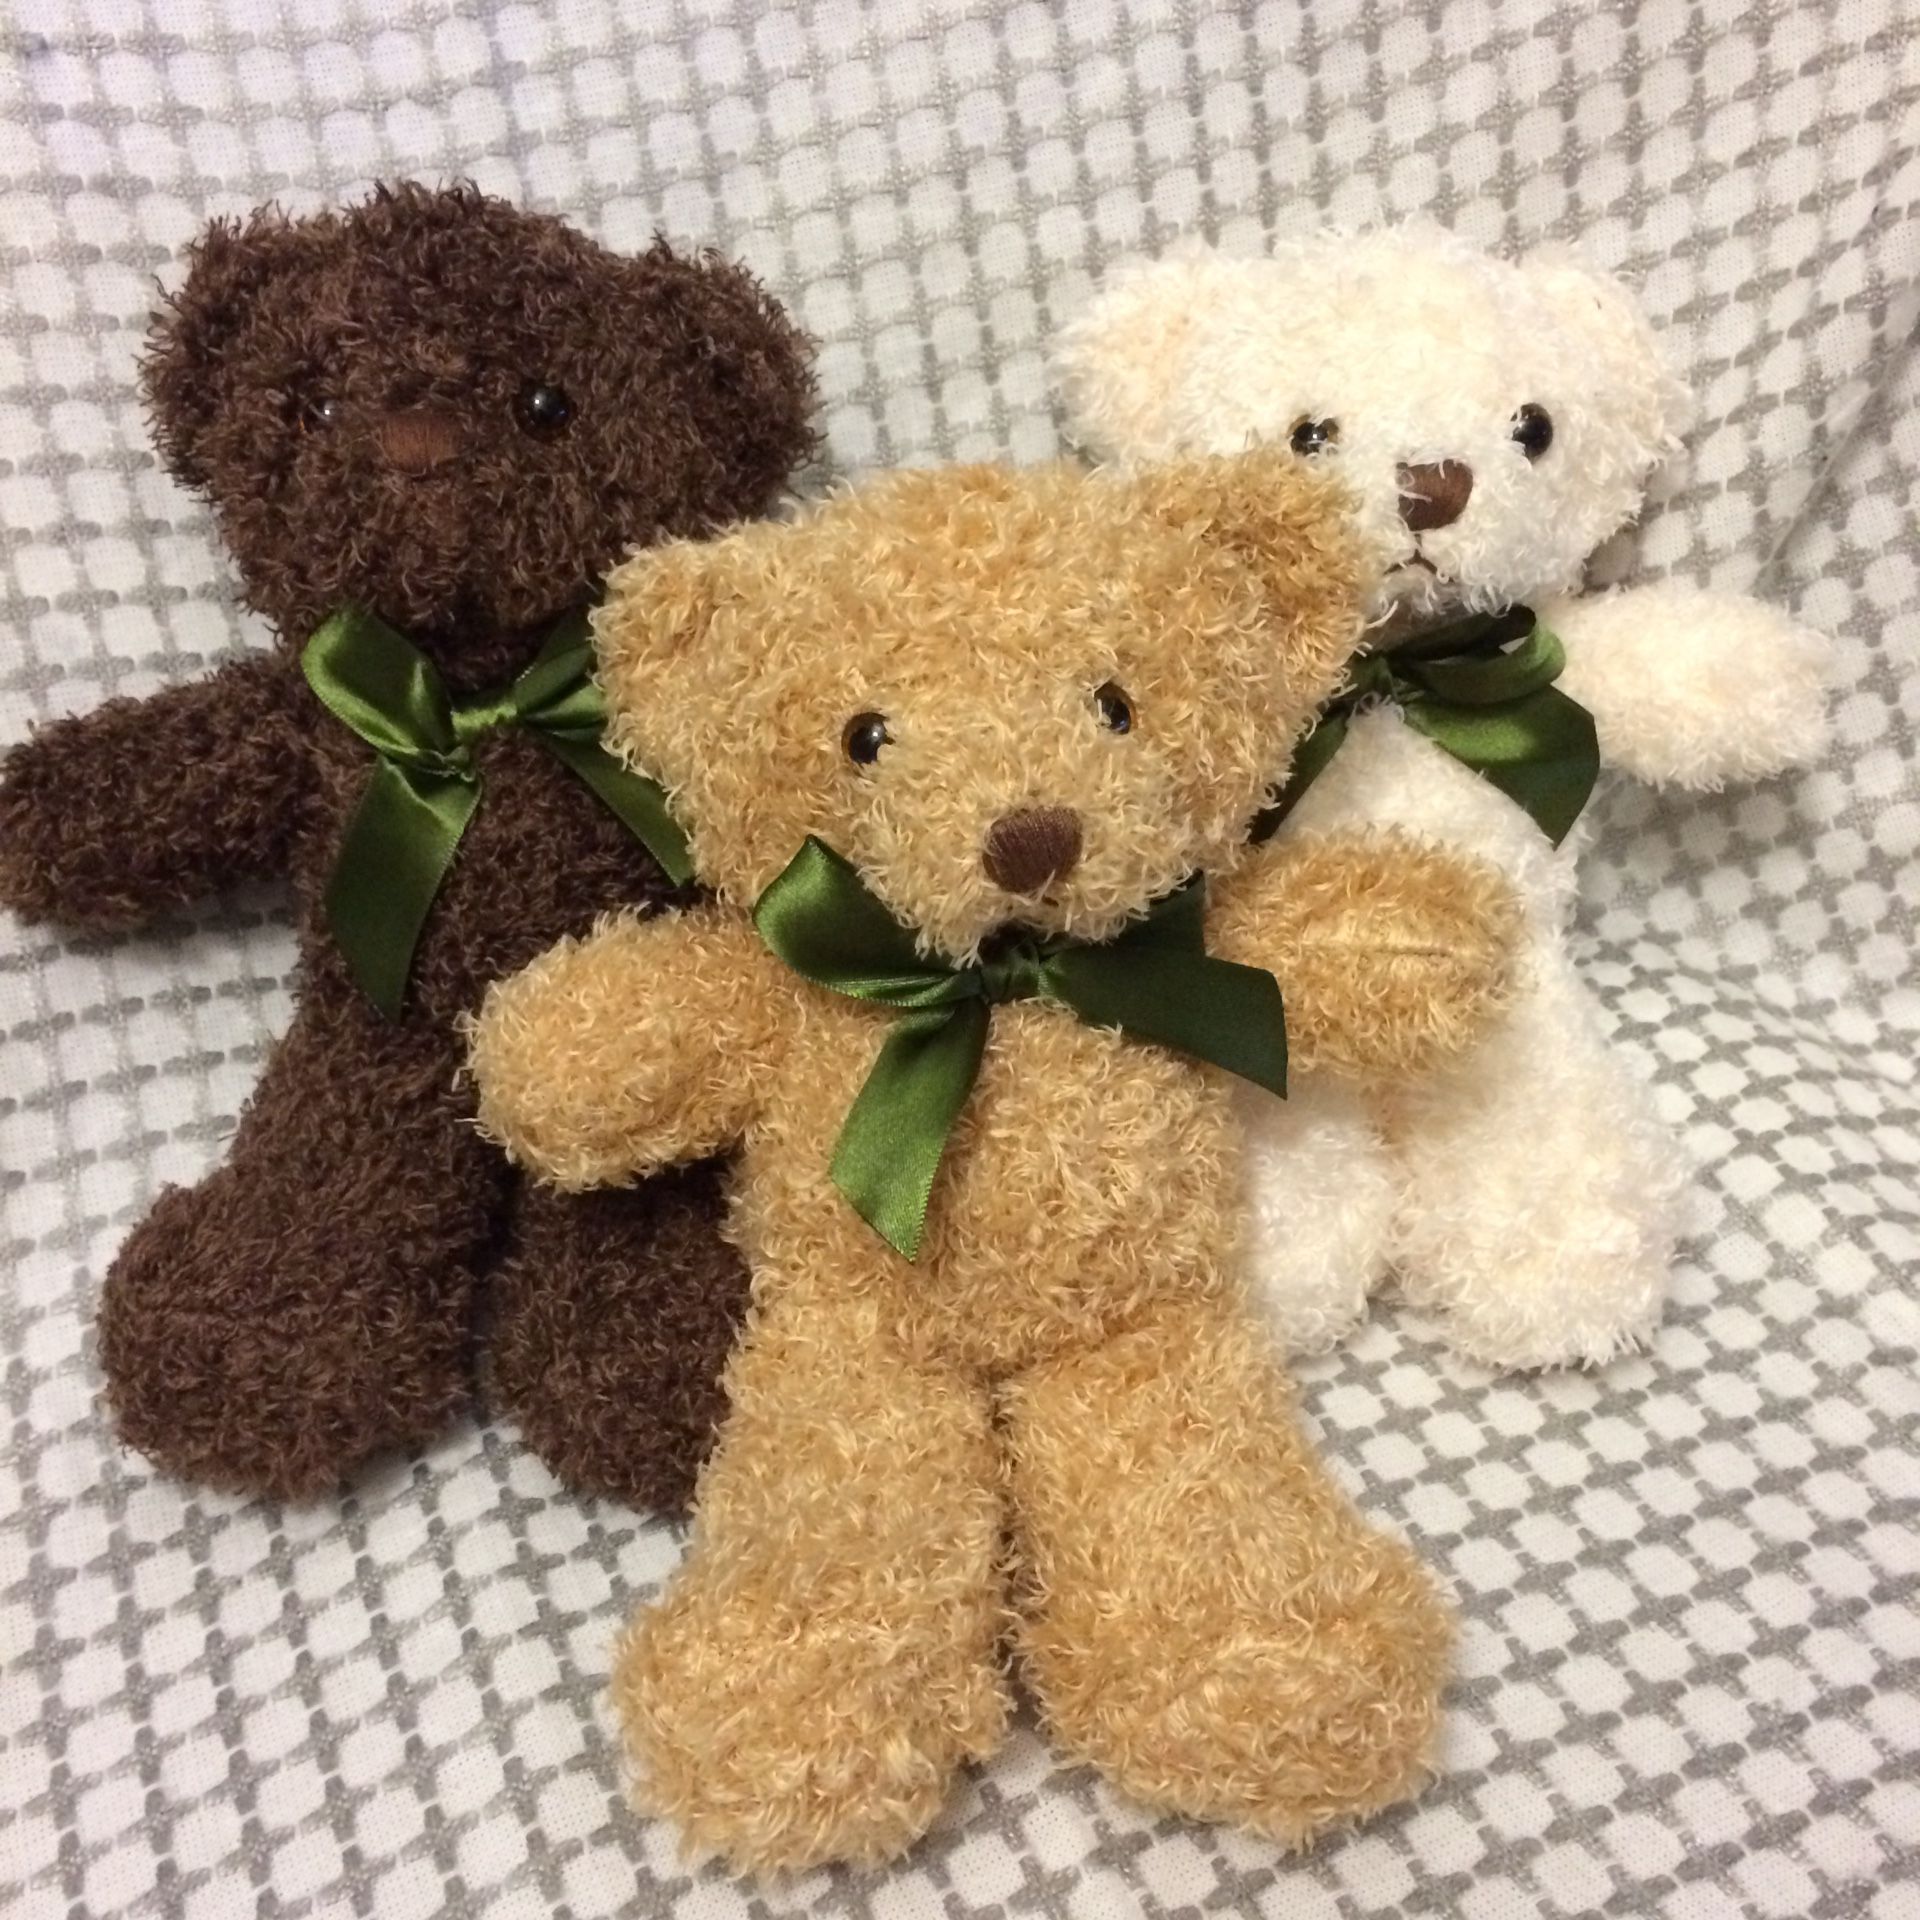 New Pluffins plush teddy bear set